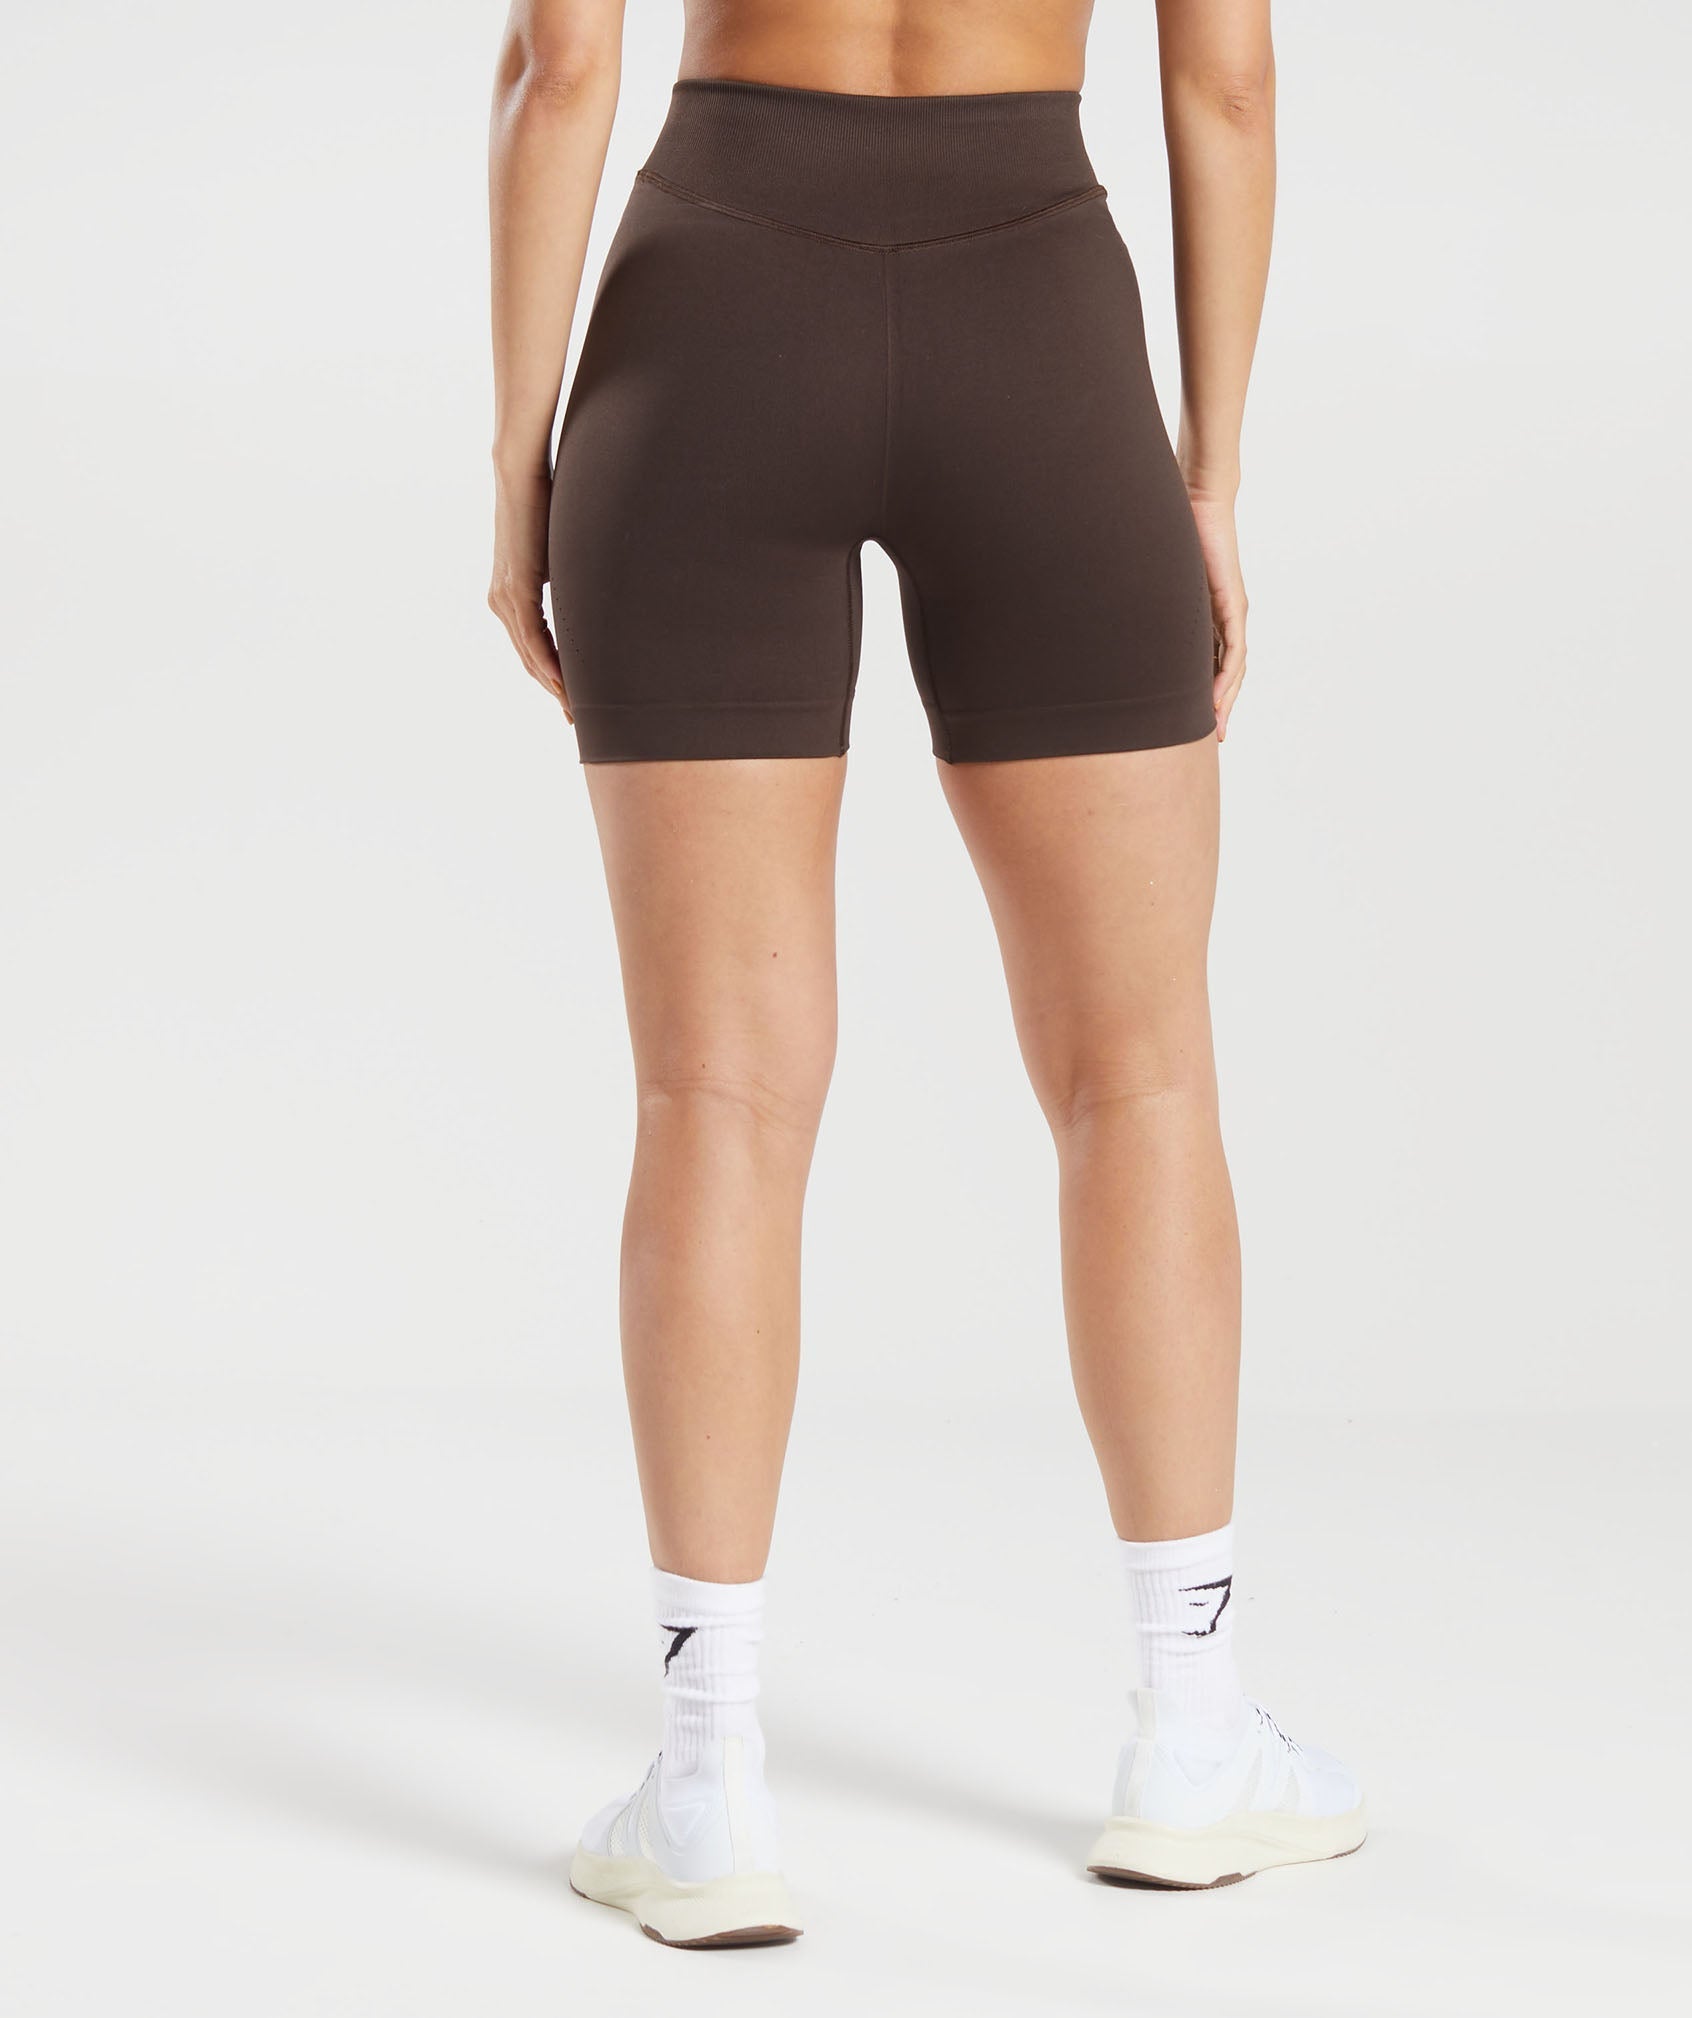 Gymshark Vital Seamless 2 0 Shorts